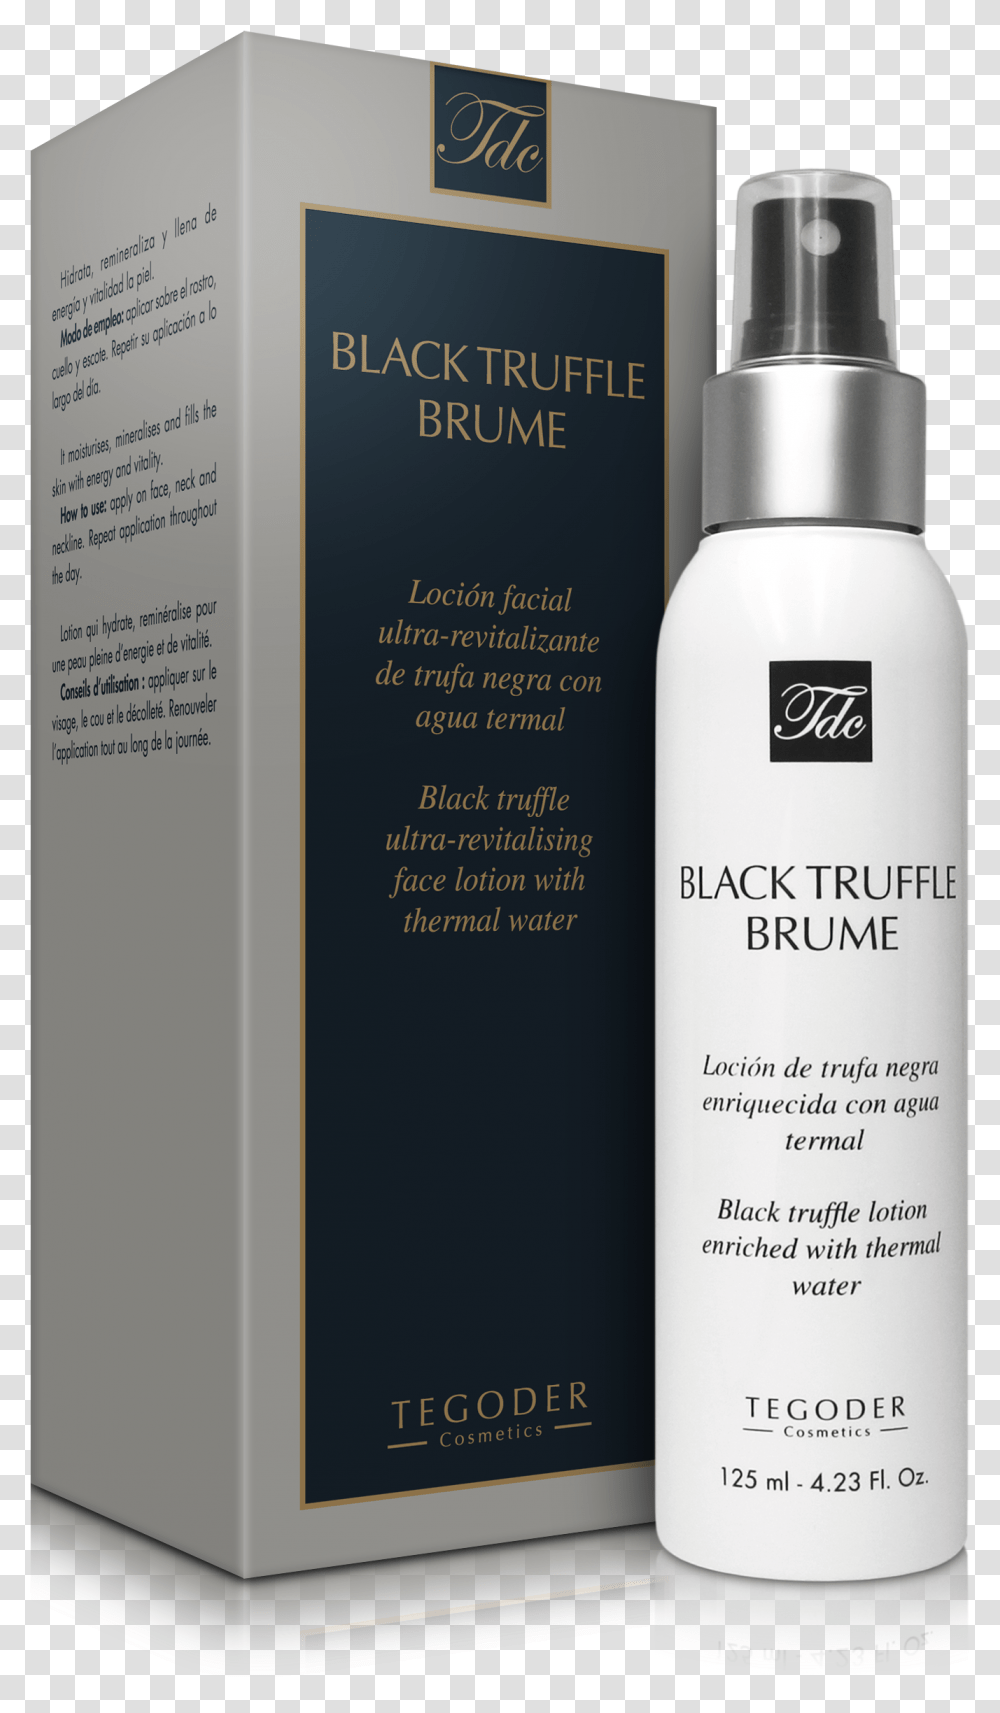 Tegoder Black Truffle Brume, Bottle, Label, Shampoo Transparent Png